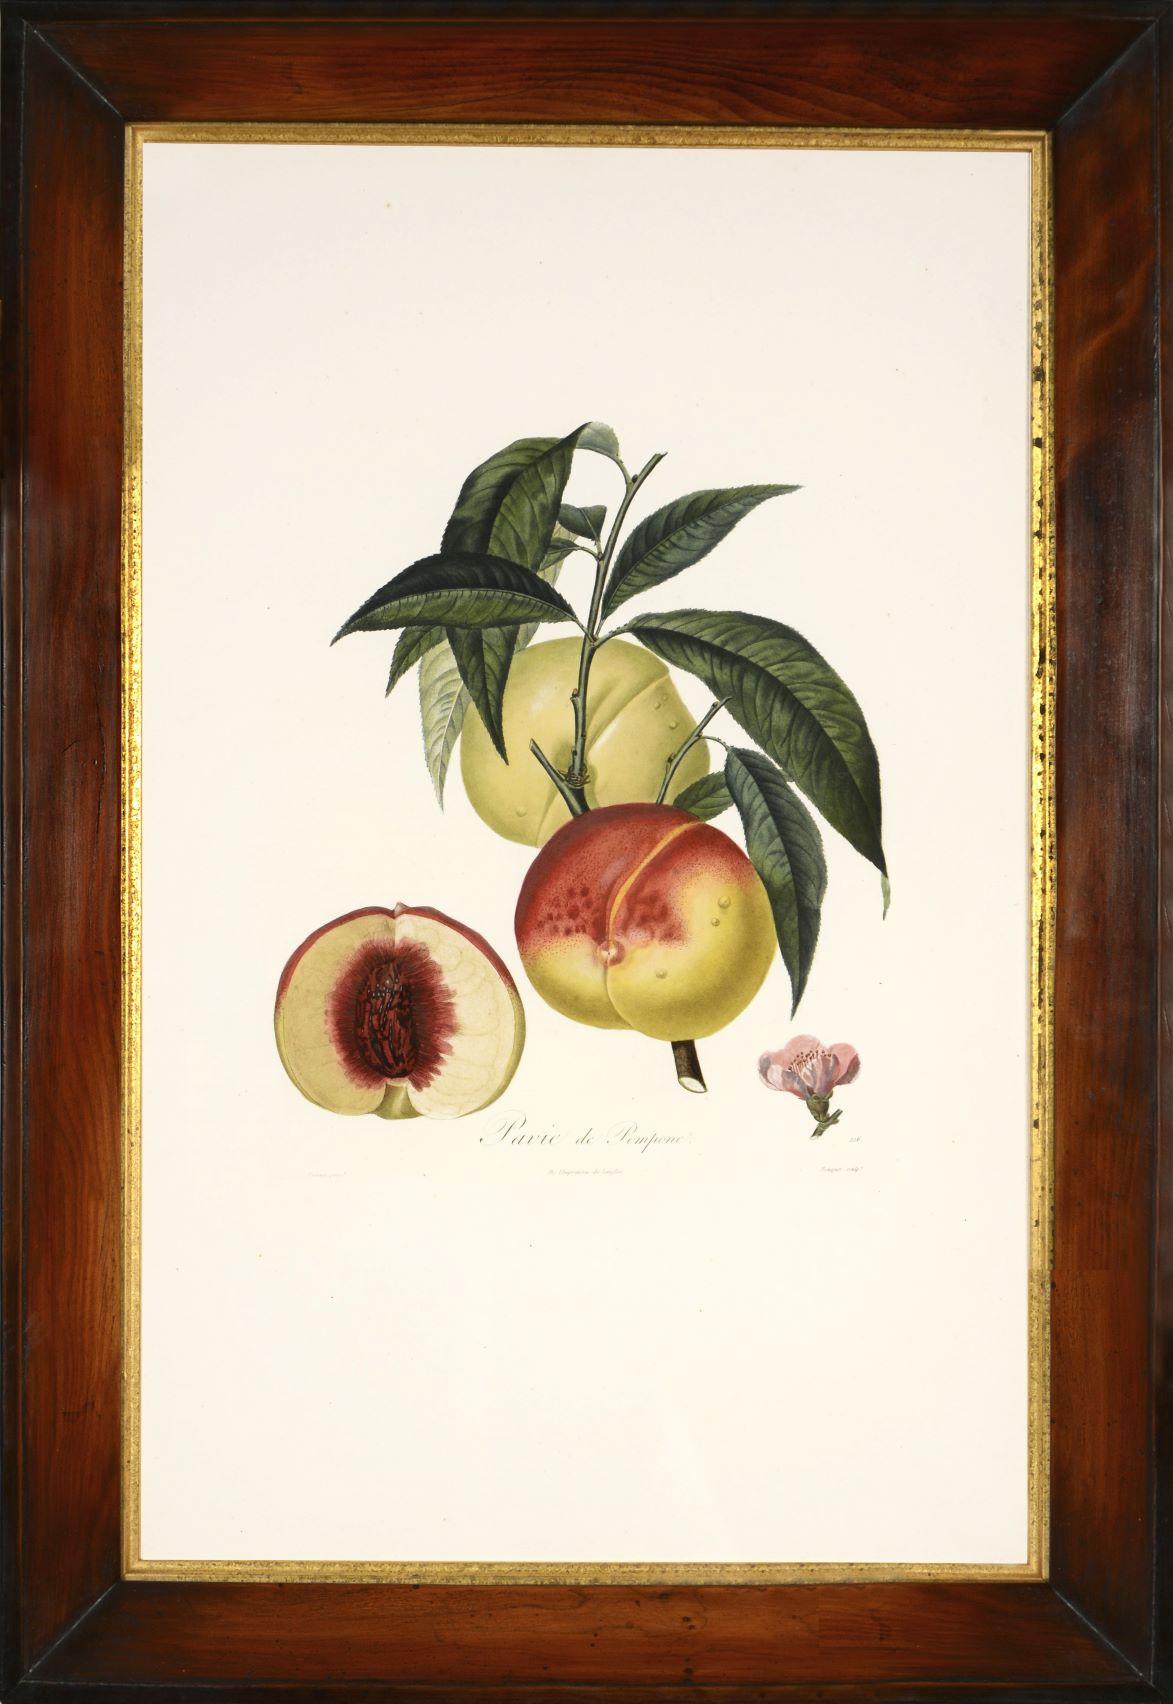 POITEAU/TURPIN. Traité des arbres fruitiers: Ein Satz von vier Pfirsichen – Print von POITEAU, A. and P. TURPIN.   